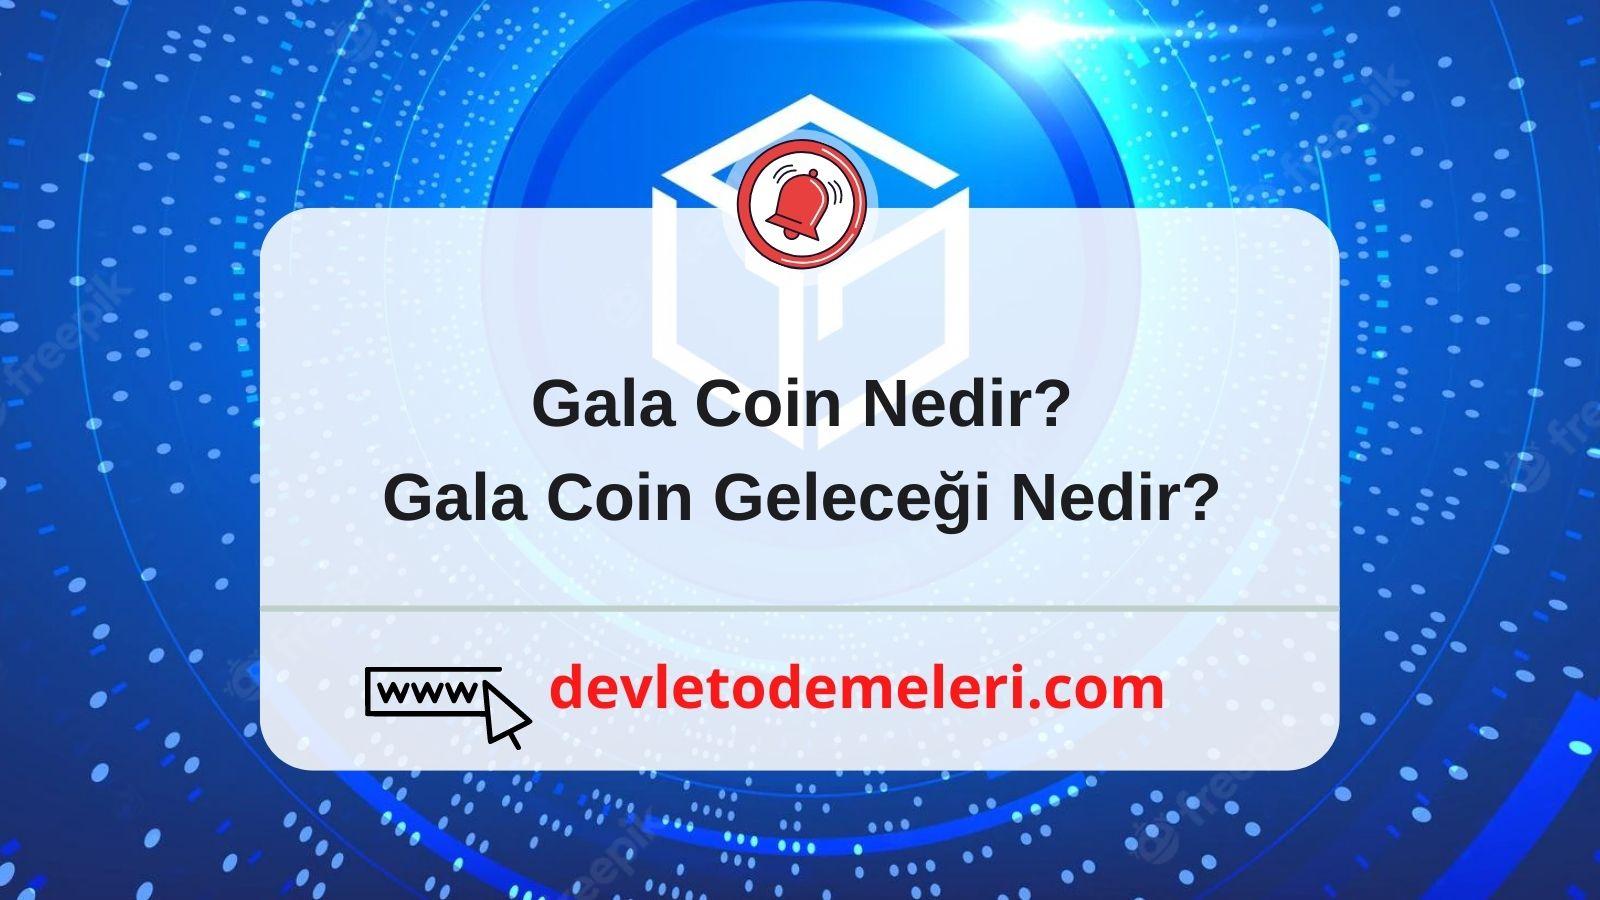 Gala Coin Geleceği Nedir?